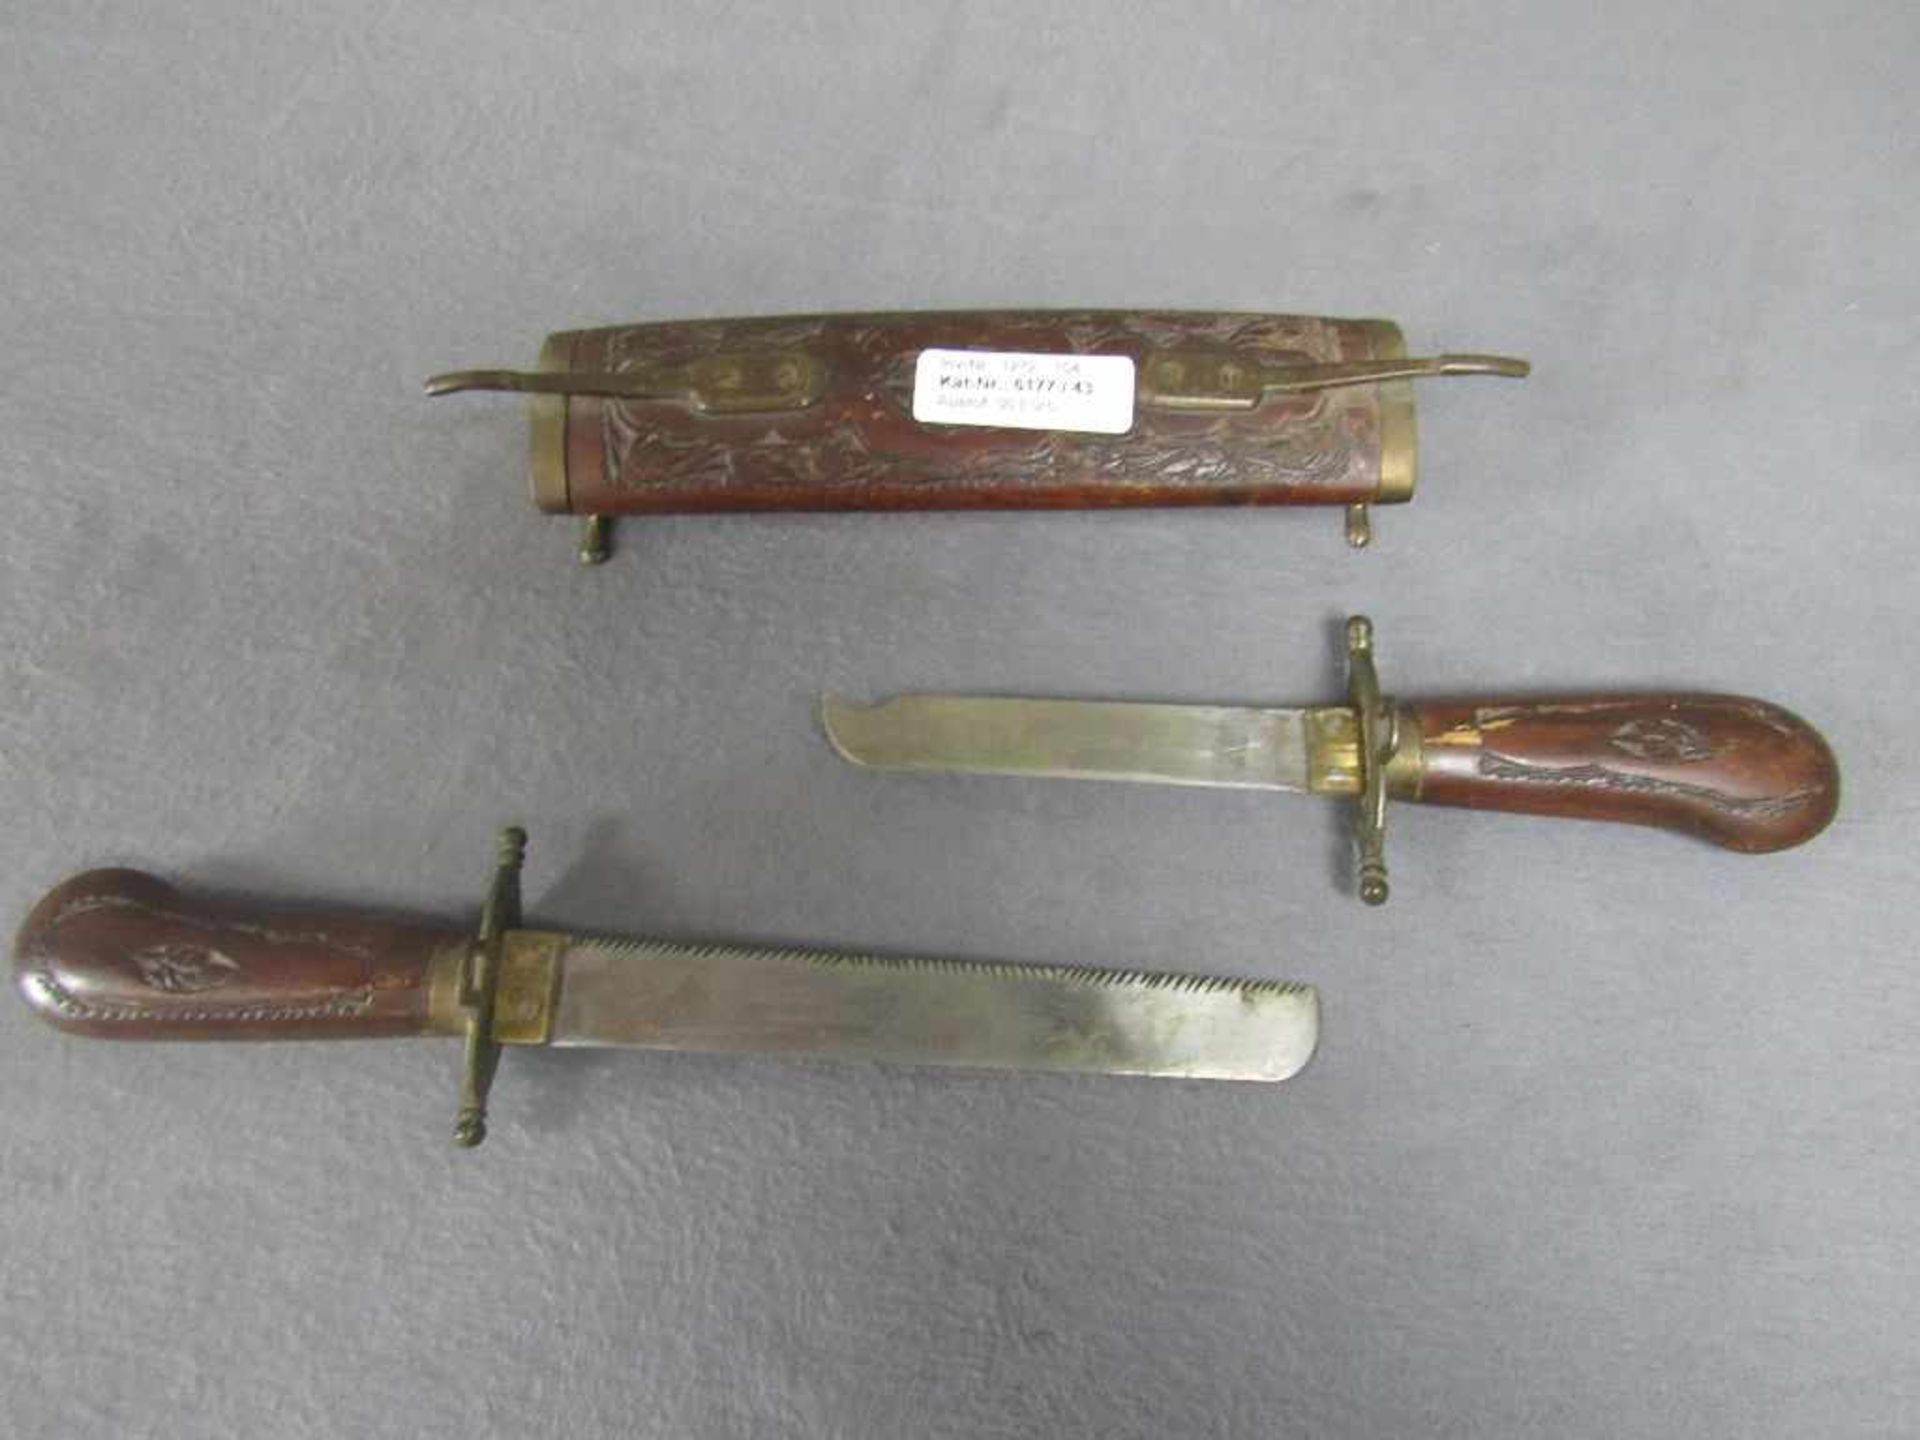 Messer zwei Stück in einer Scheide geschnitzes Holz und Bronzeapliken gesamtlänge 43cm- - -20.00 % - Bild 2 aus 2